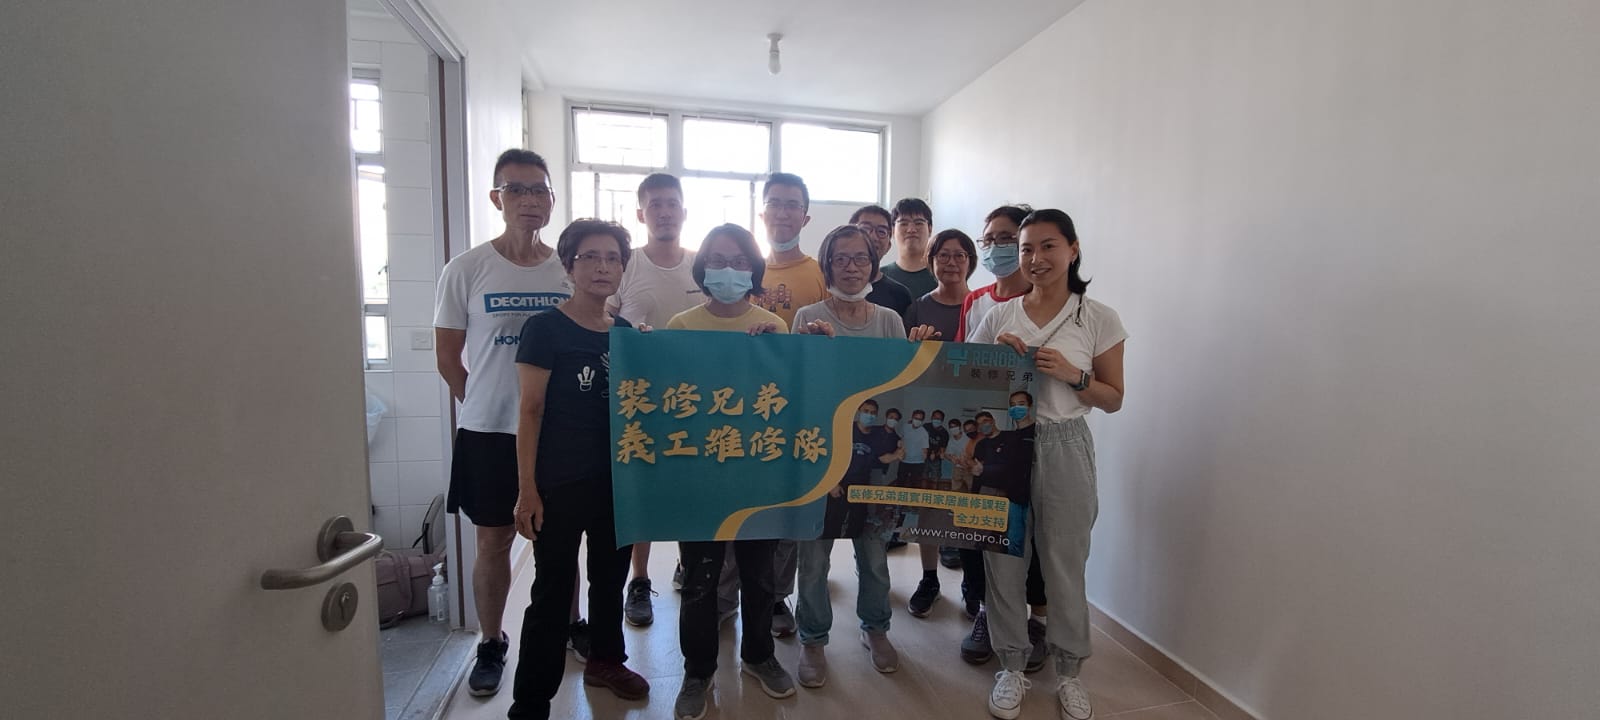 裝修兄弟義工維修隊：為香港社會帶來改變的力量